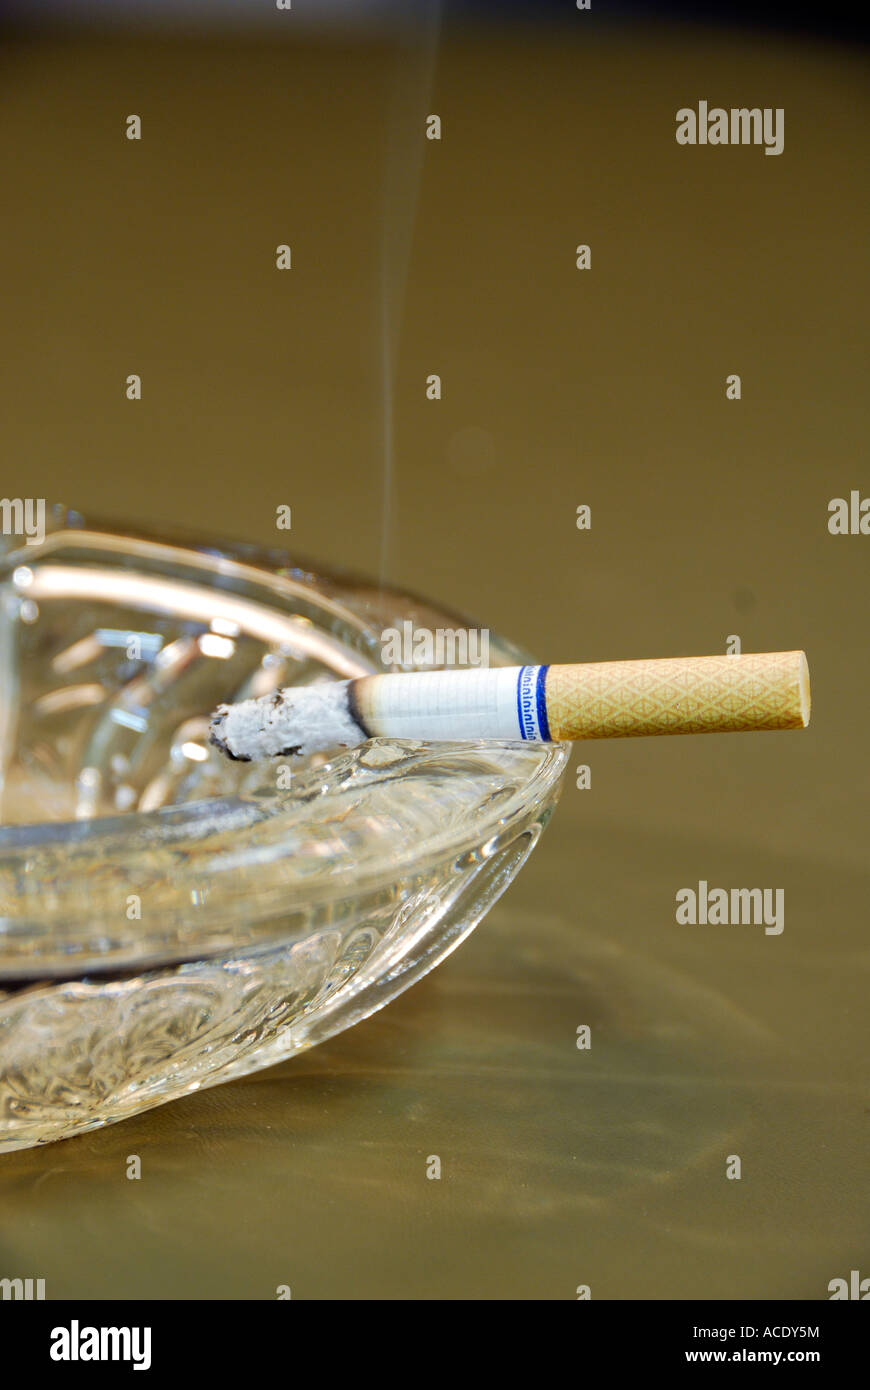 Masterizzazione di sigaretta nel portacenere Foto Stock